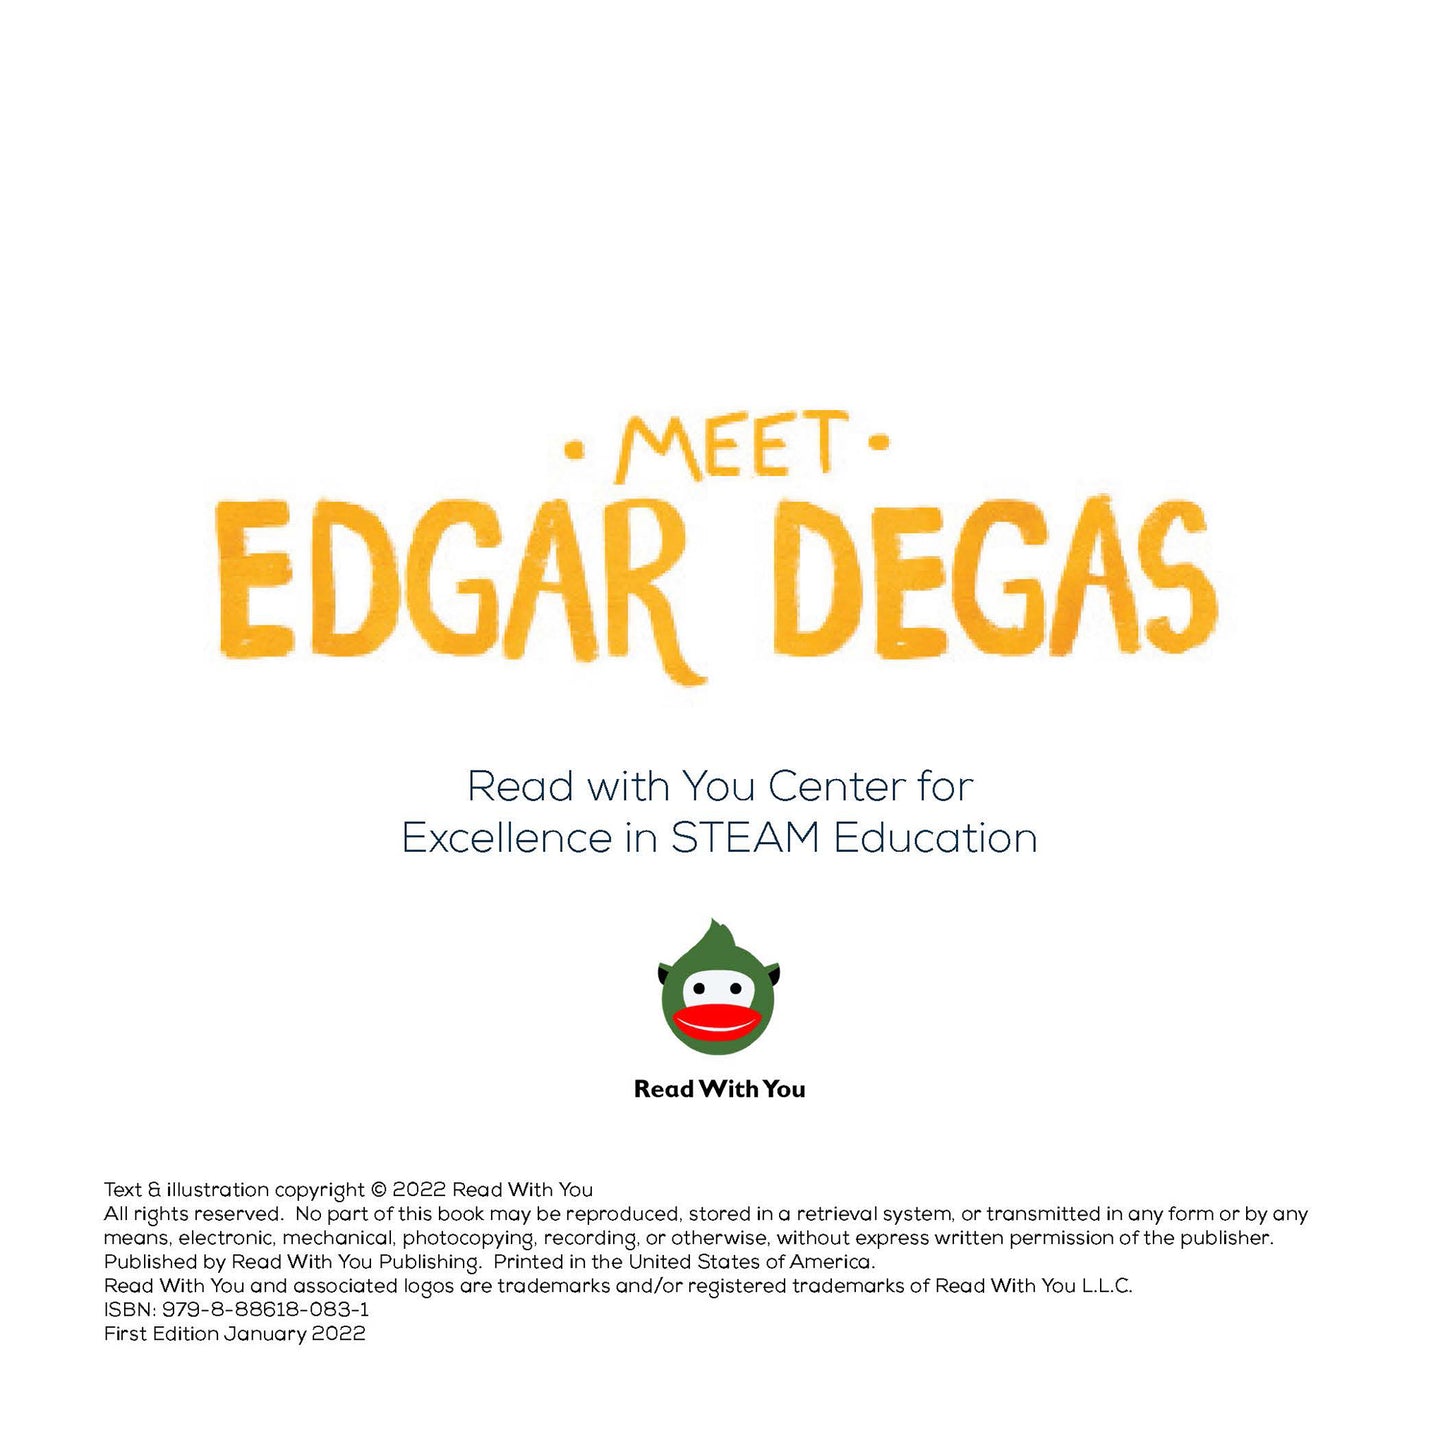 Meet Edgar Degas